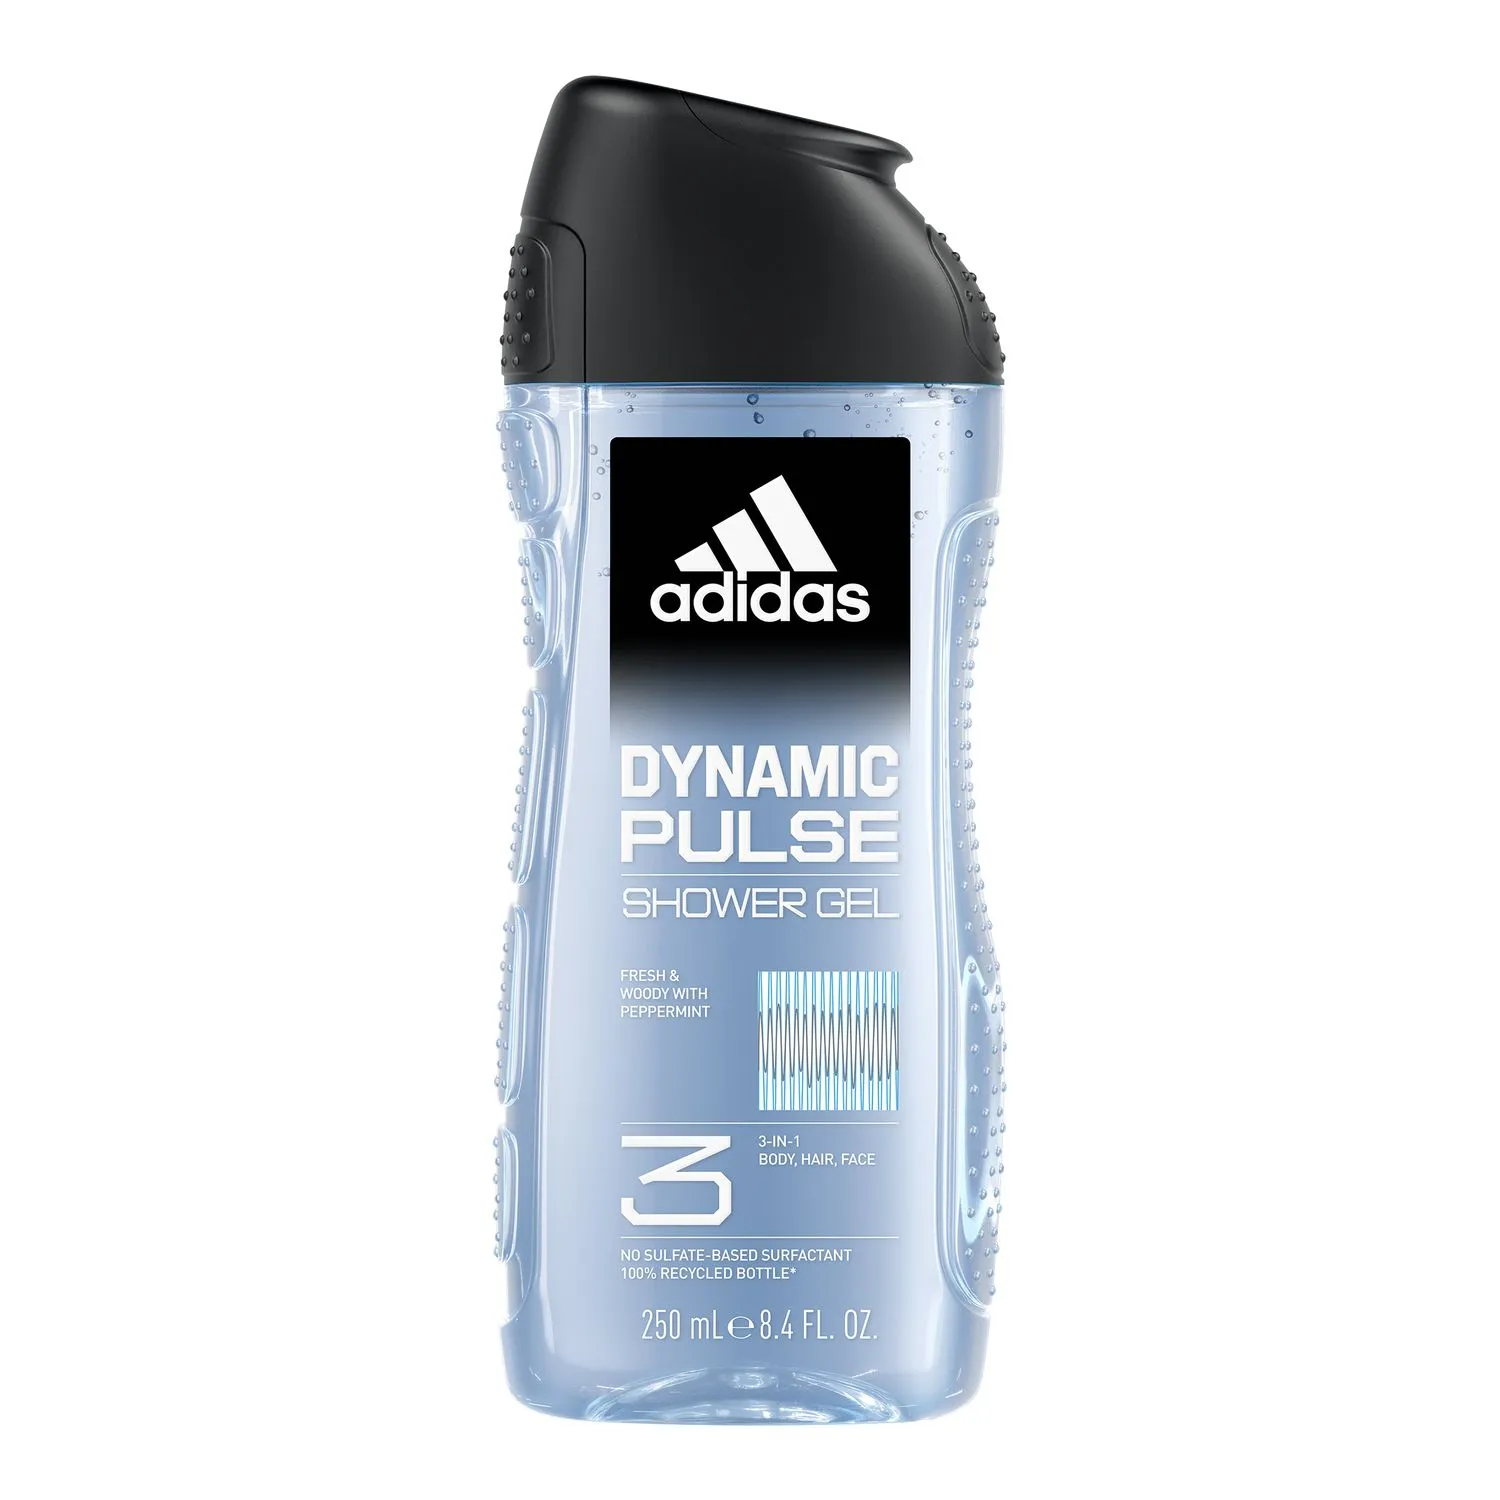 adidas Dynamic Pulse żel pod prysznic 3 w 1 dla mężczyzn, 250 ml